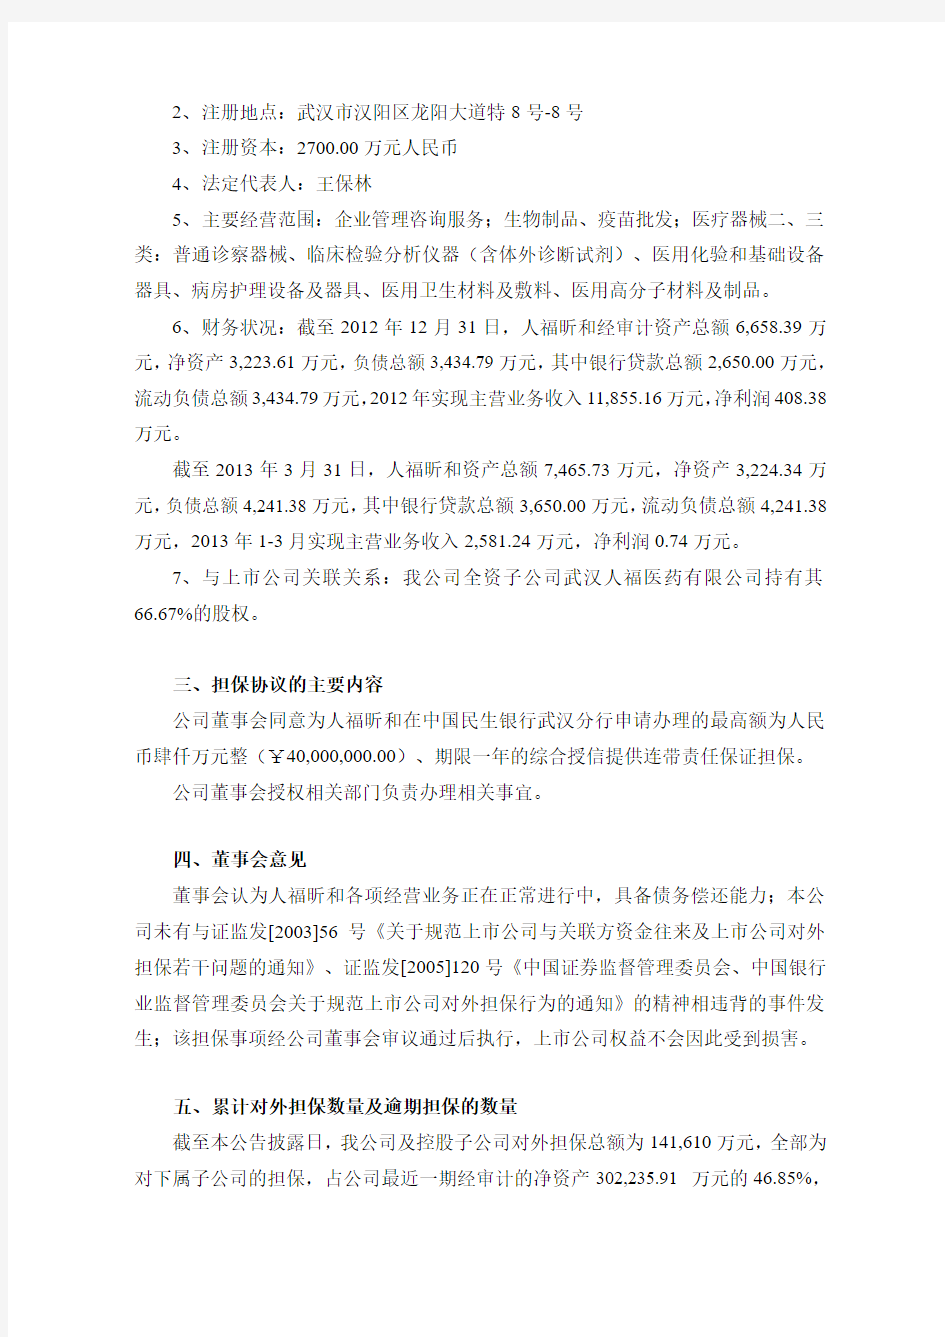 600079   人福医药董事会关于为武汉人福昕和生物医药有限公司提供担保的公告